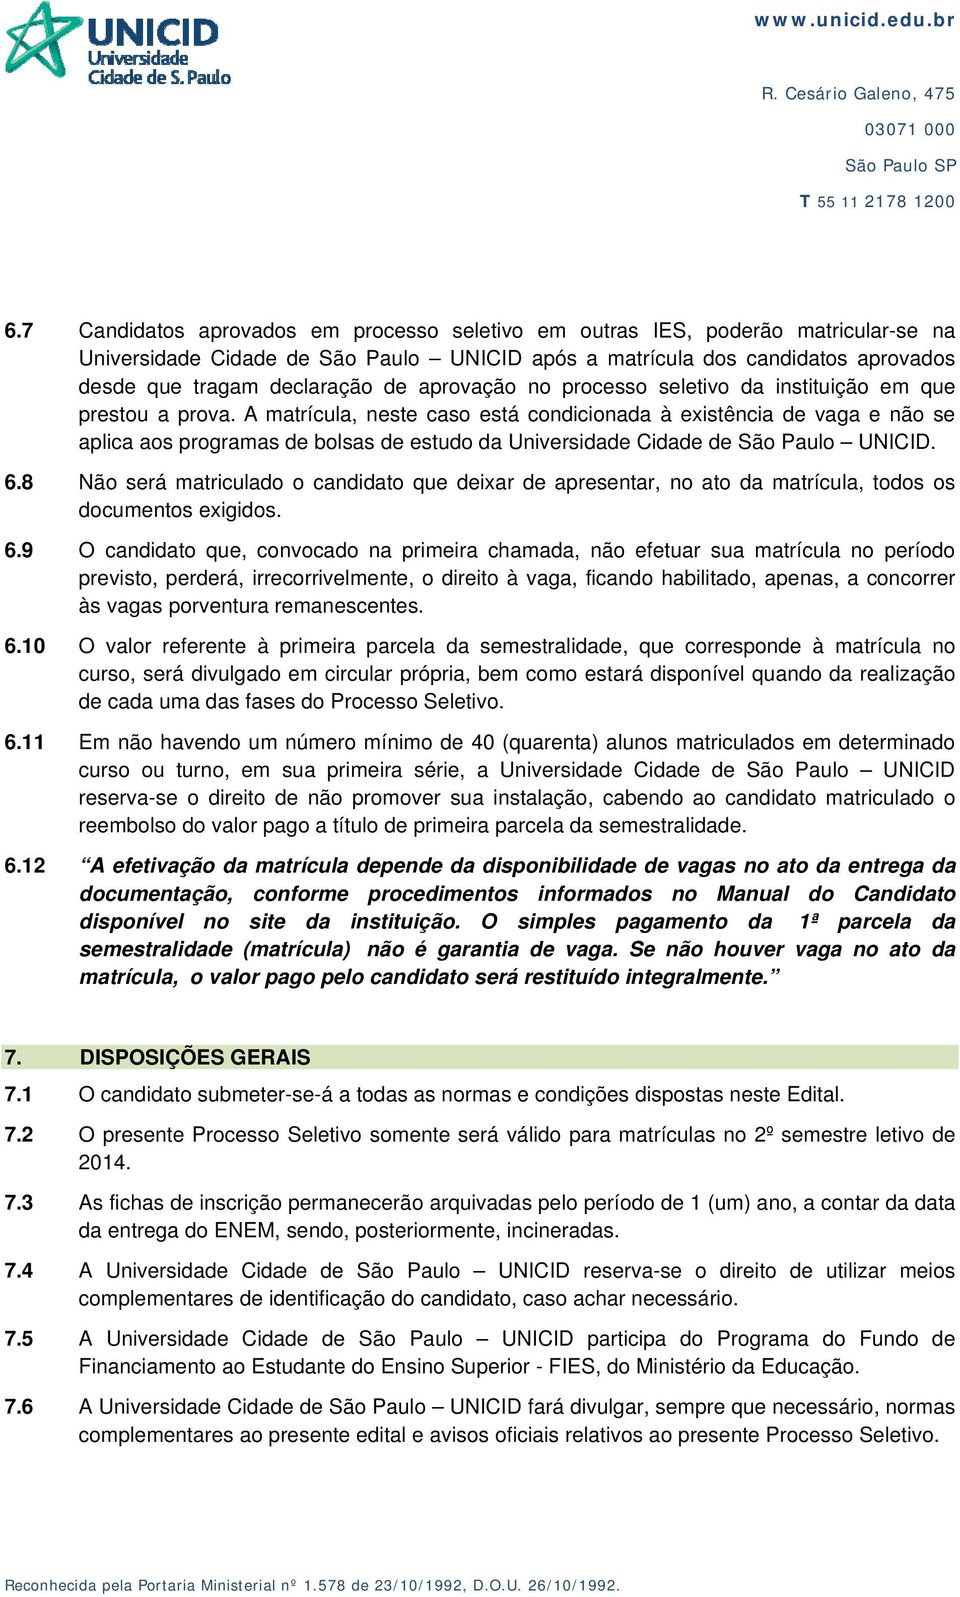 A matrícula, neste caso está condicionada à existência de vaga e não se aplica aos programas de bolsas de estudo da Universidade Cidade de São Paulo UNICID. 6.